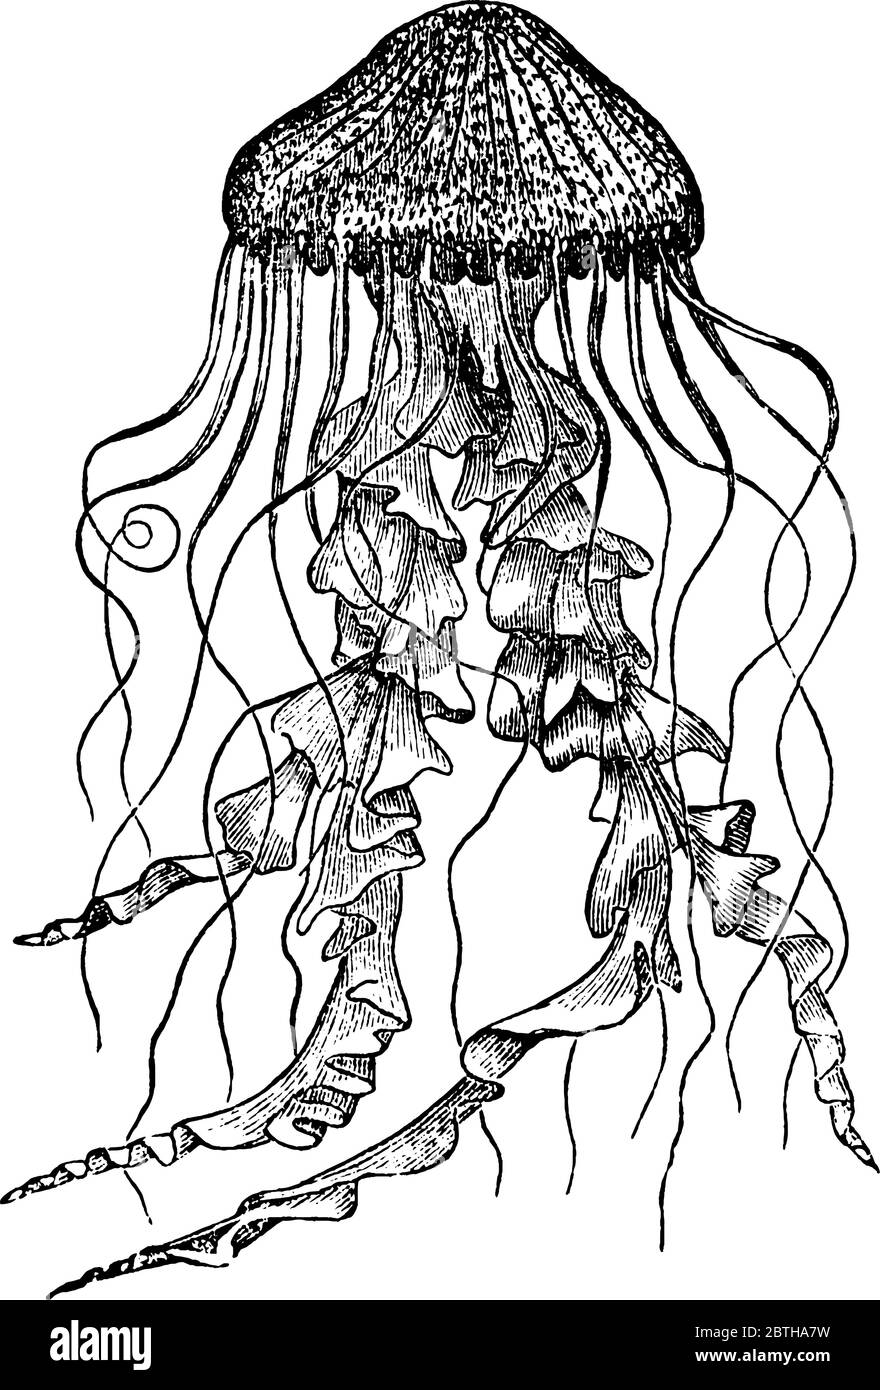 Quallen aus der Hydrozoa-Familie, Vintage-Strichzeichnung oder Gravur Illustration. Stock Vektor